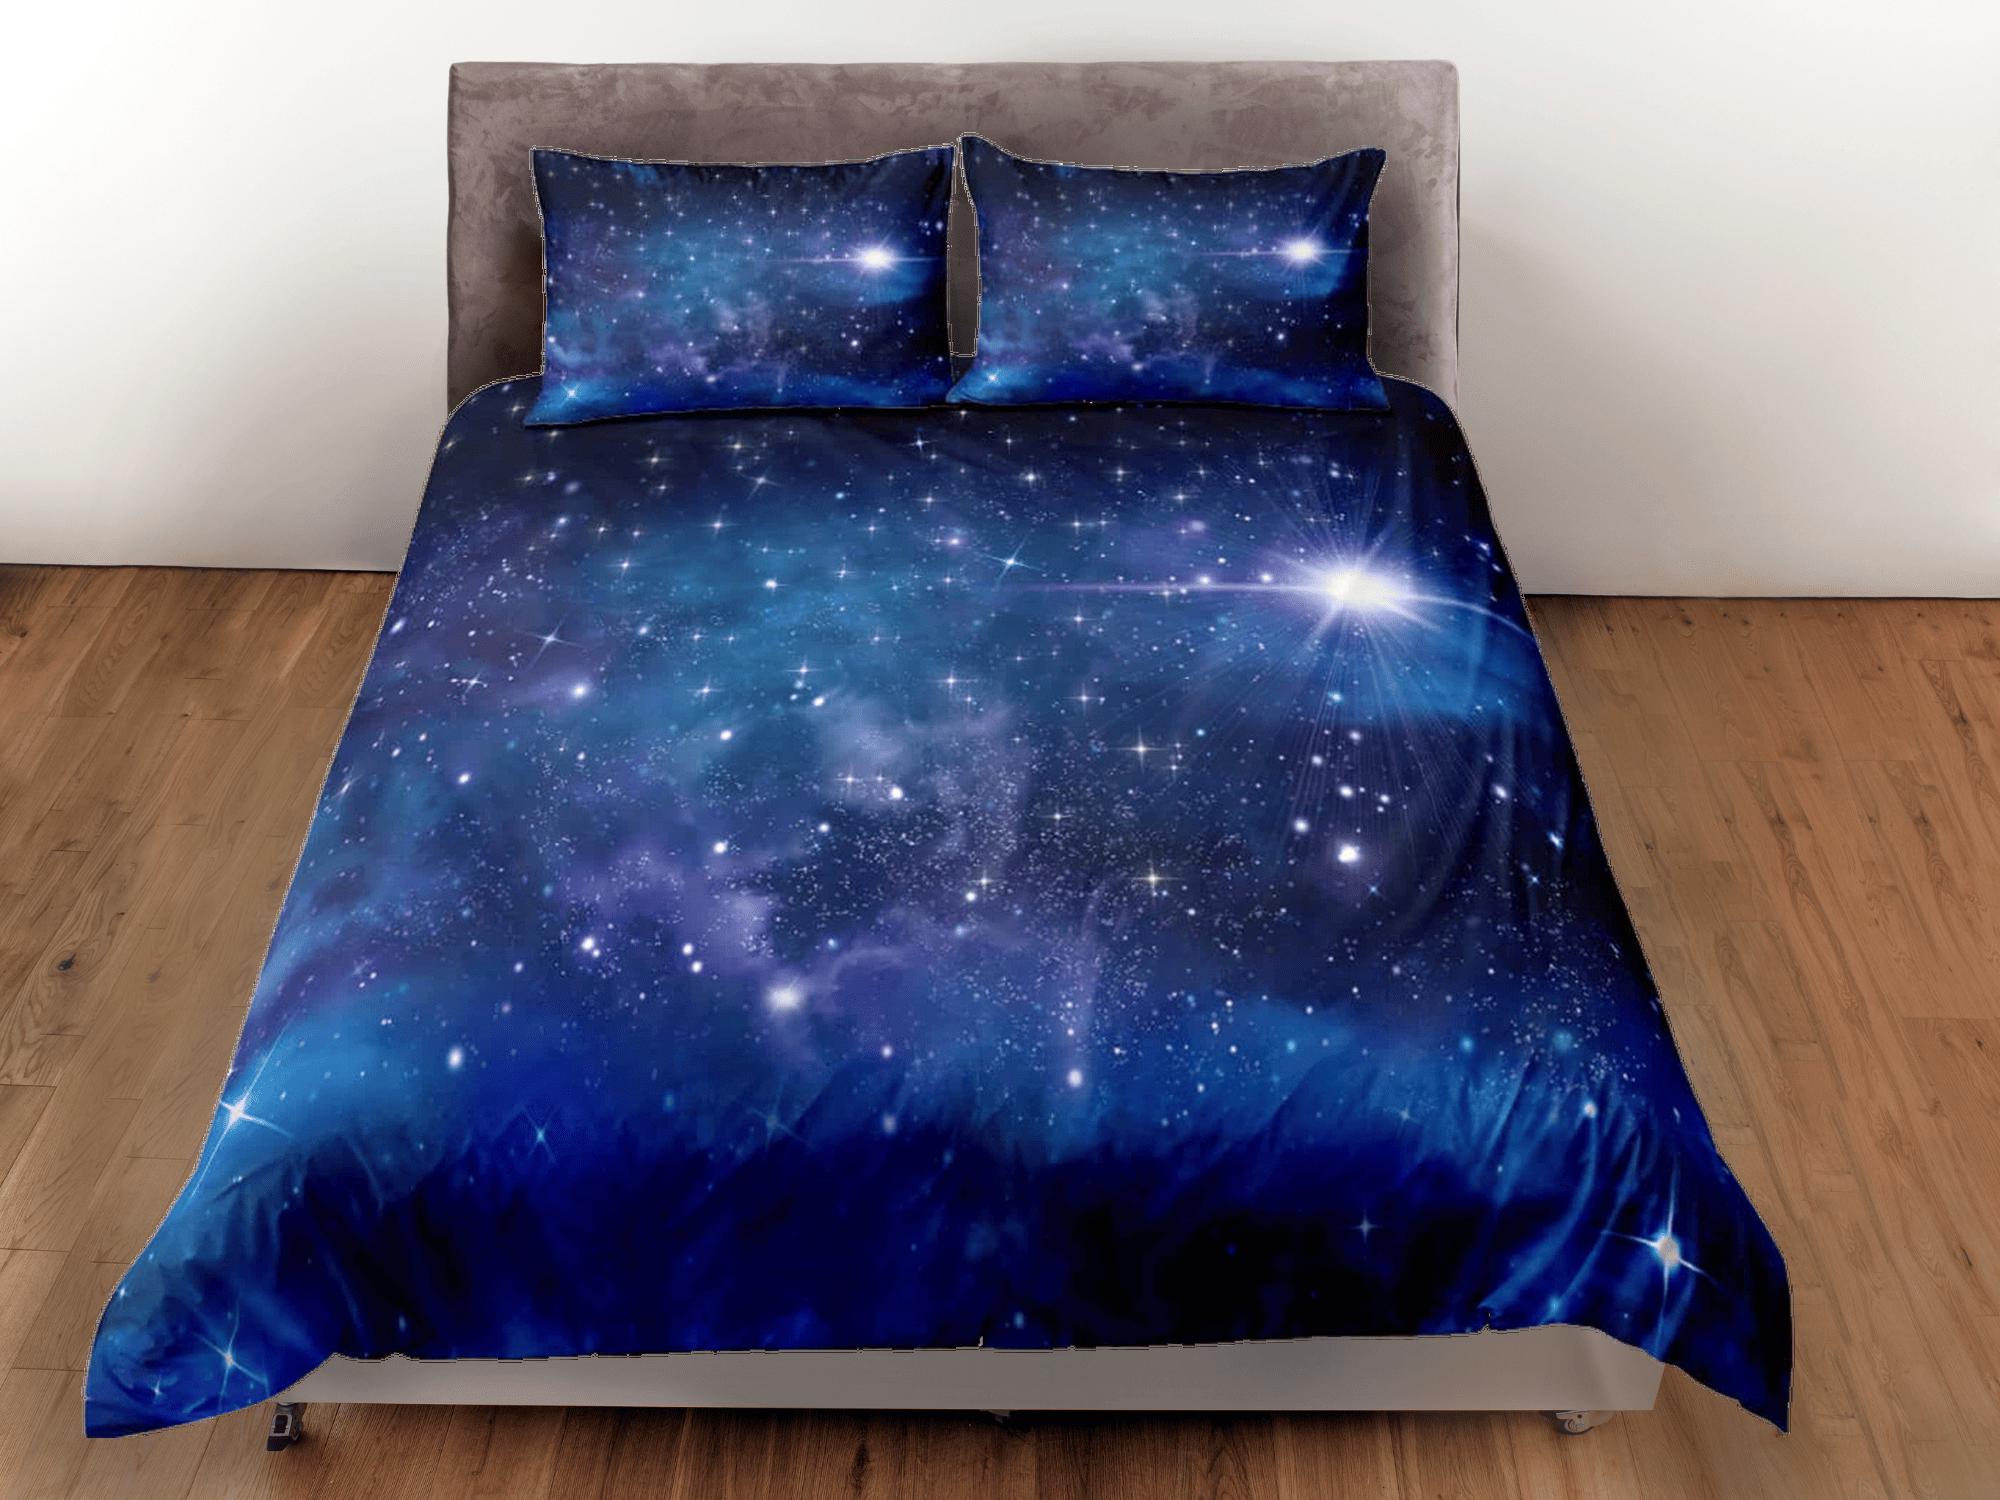 daintyduvet Interstellar galaxy bedding, 3D outer space bedding set full, stars duvet cover king, queen, dorm bedding, toddler bedding aesthetic duvet